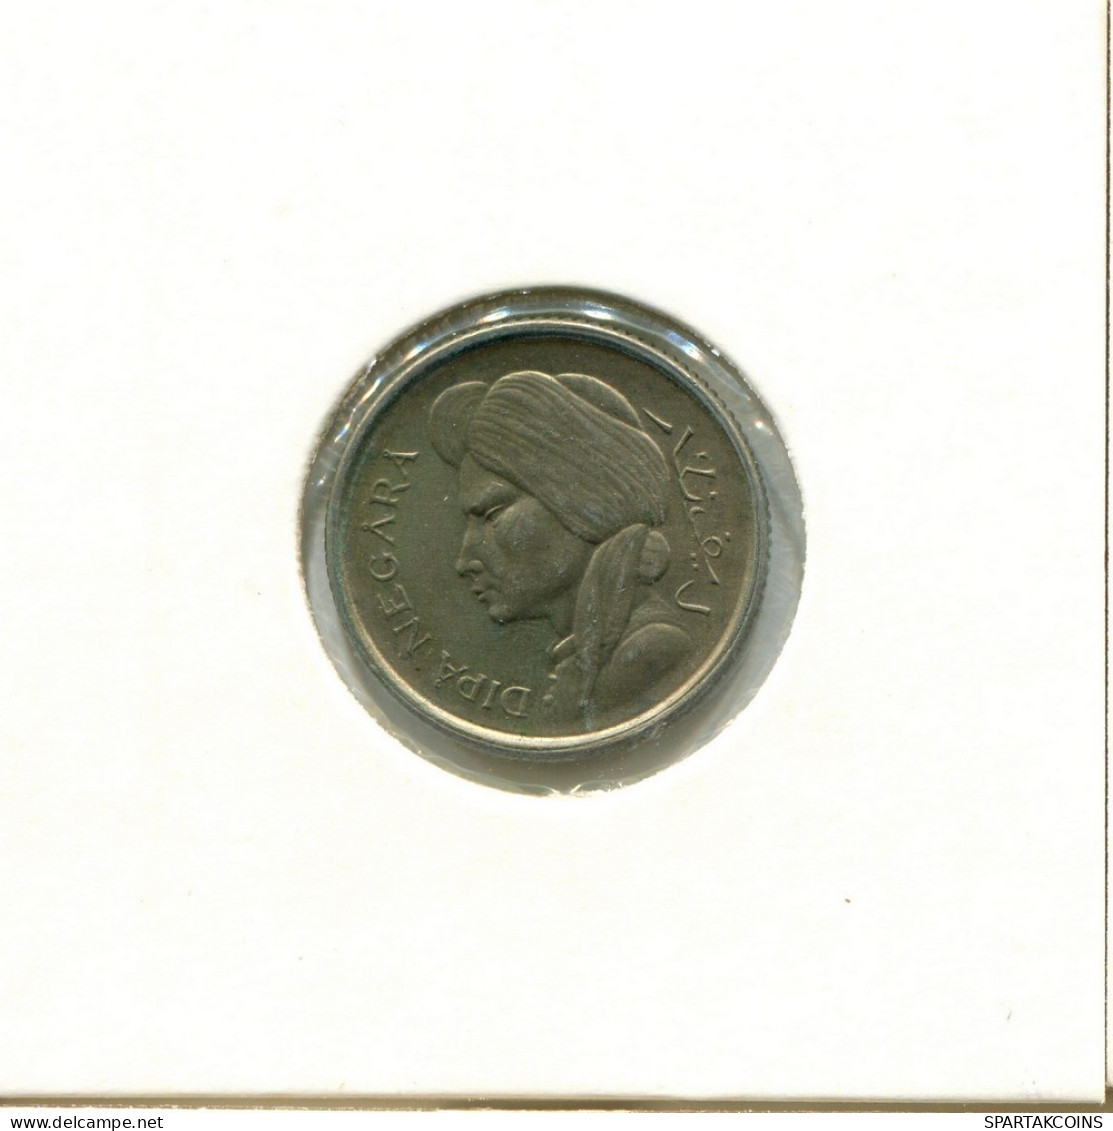 50 SEN 1952 INDONESISCH INDONESIA Münze #AY855.D.A - Indonesia